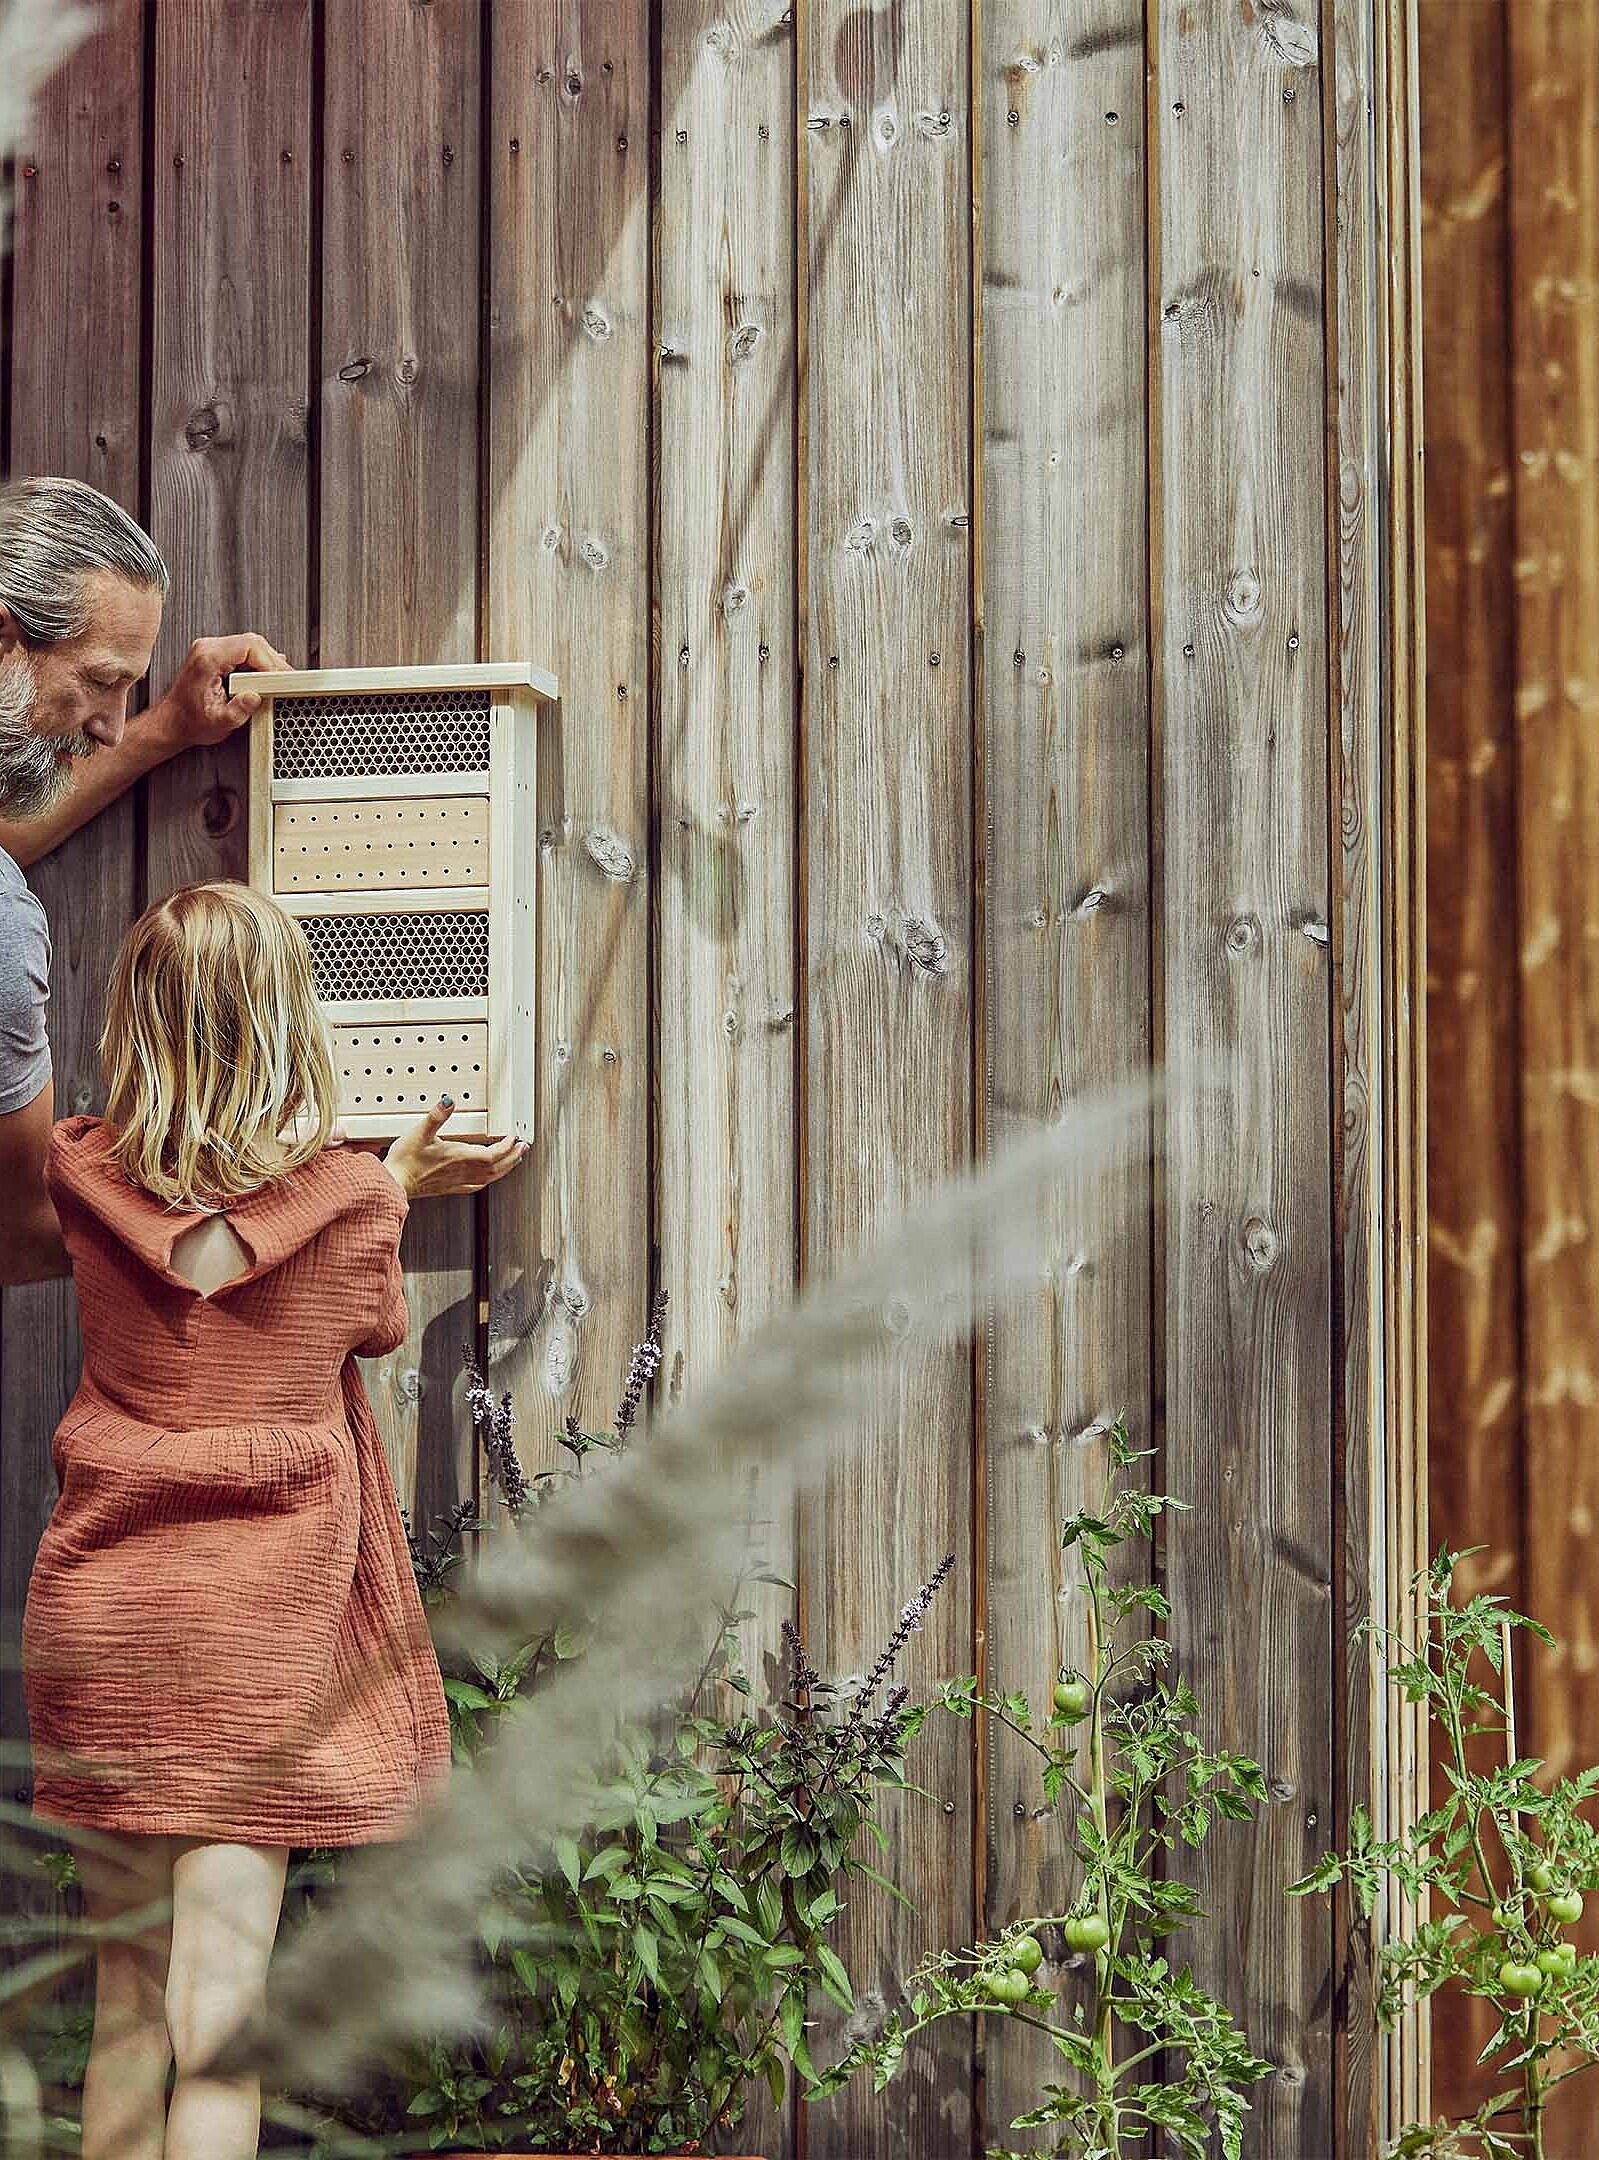 Vater und Tochter befestigen ein Insektenhotel